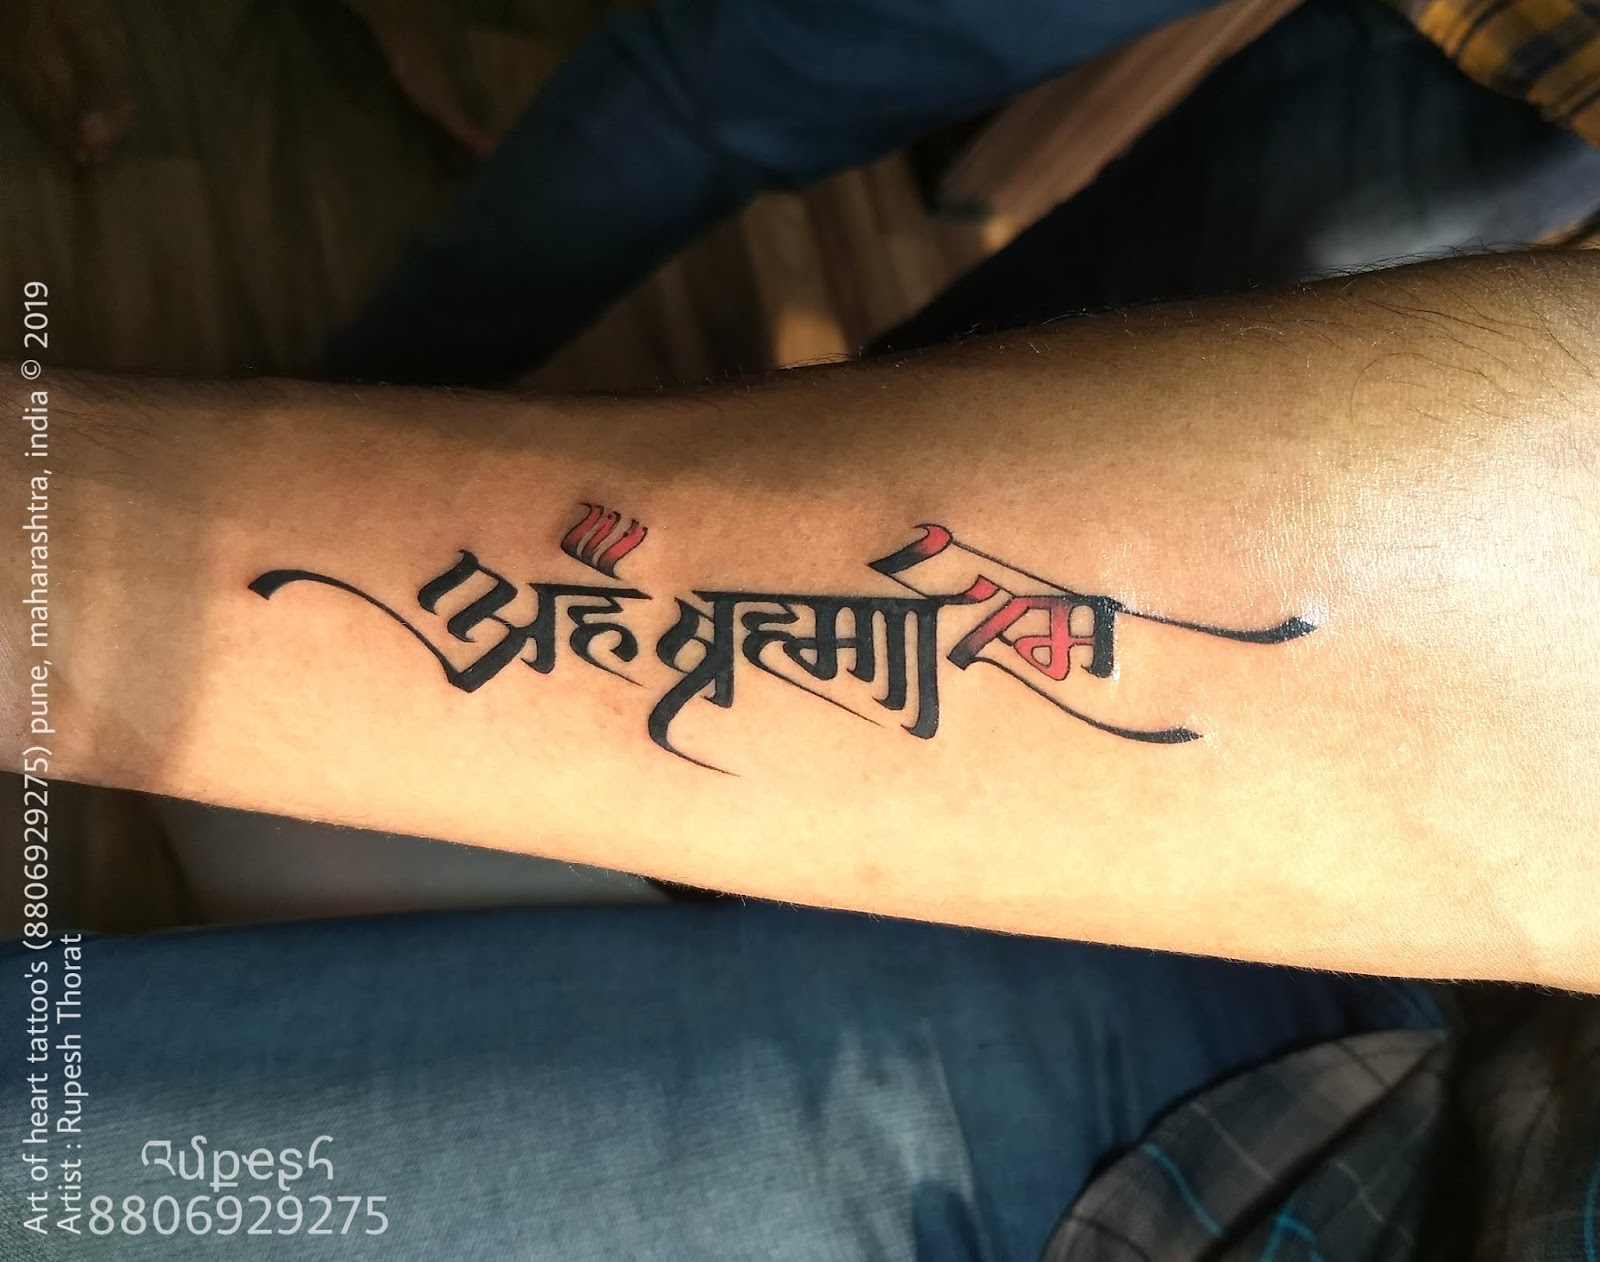 Cover Up Tattoo Design In Marathi - टॅटू डिझाईन आणि झाकण्यासाठी टिप्स